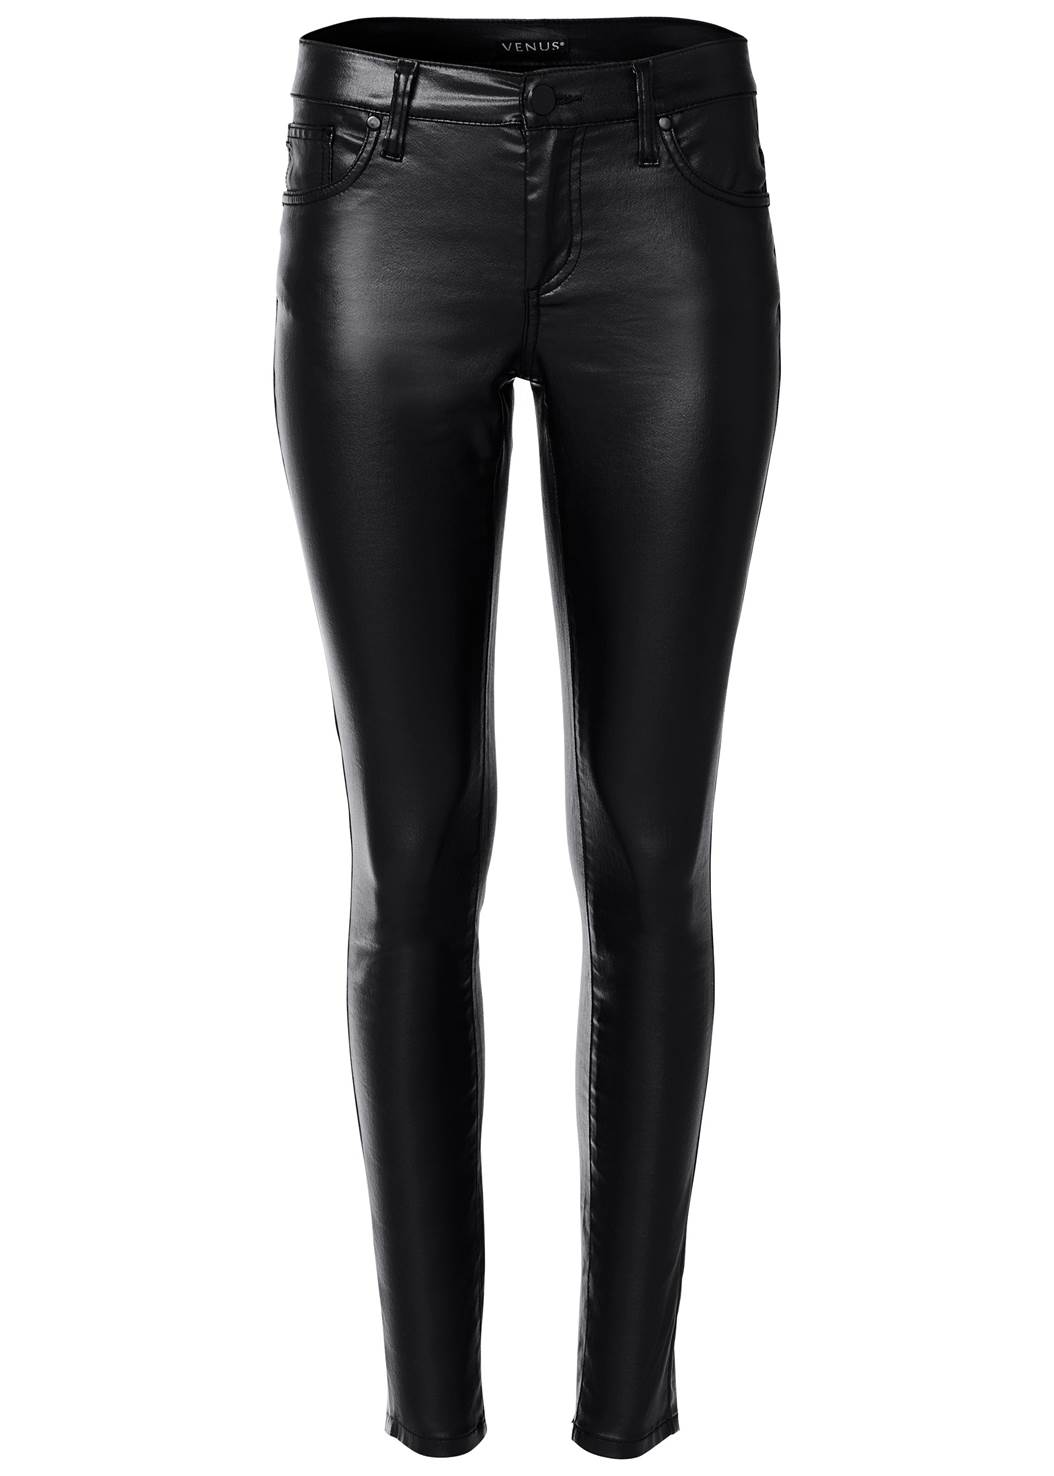 Plus Size Faux Leather Pants in Black | VENUS